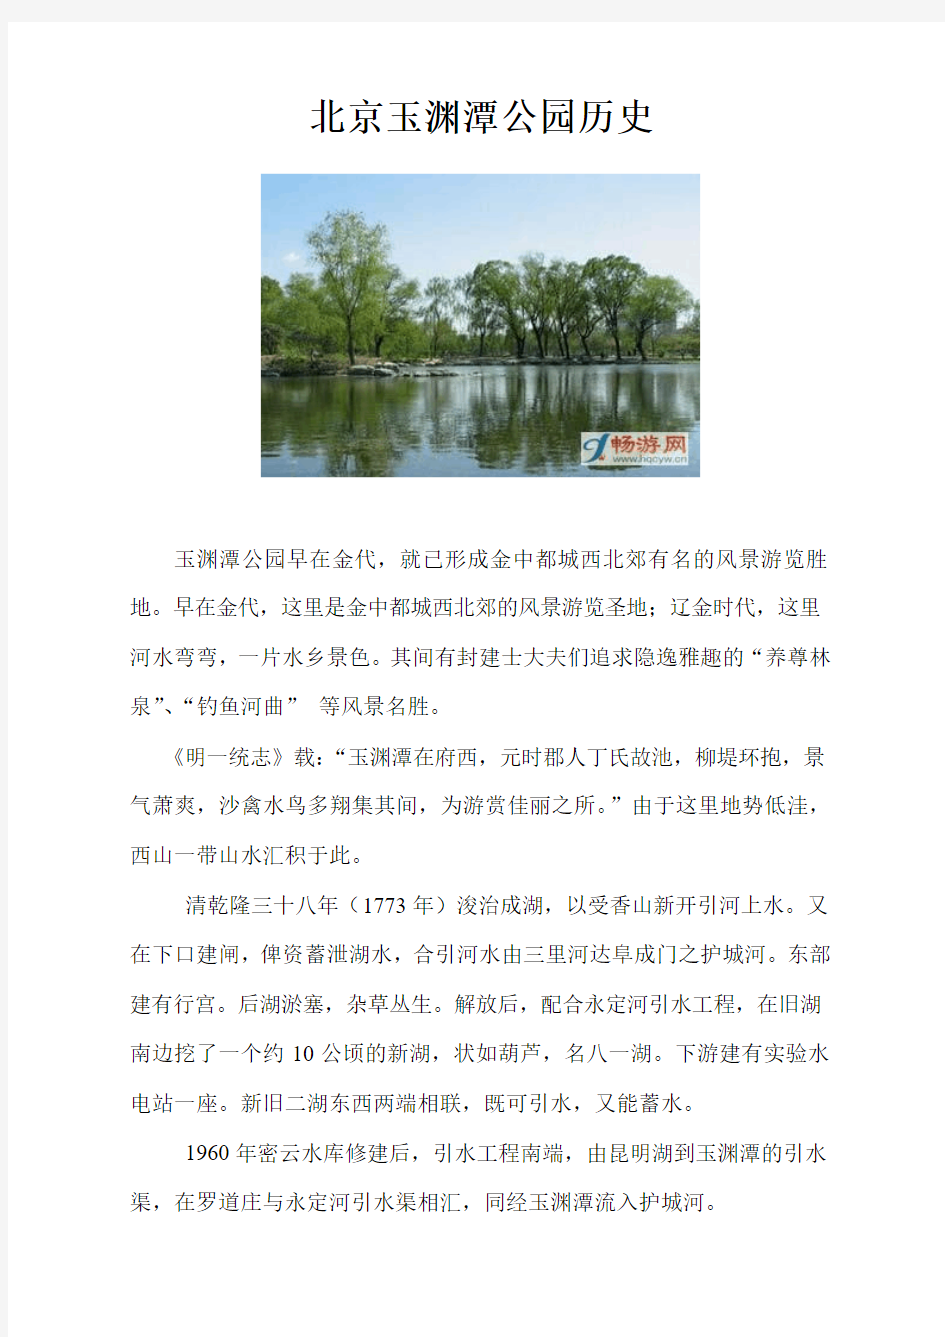 北京玉渊潭公园历史